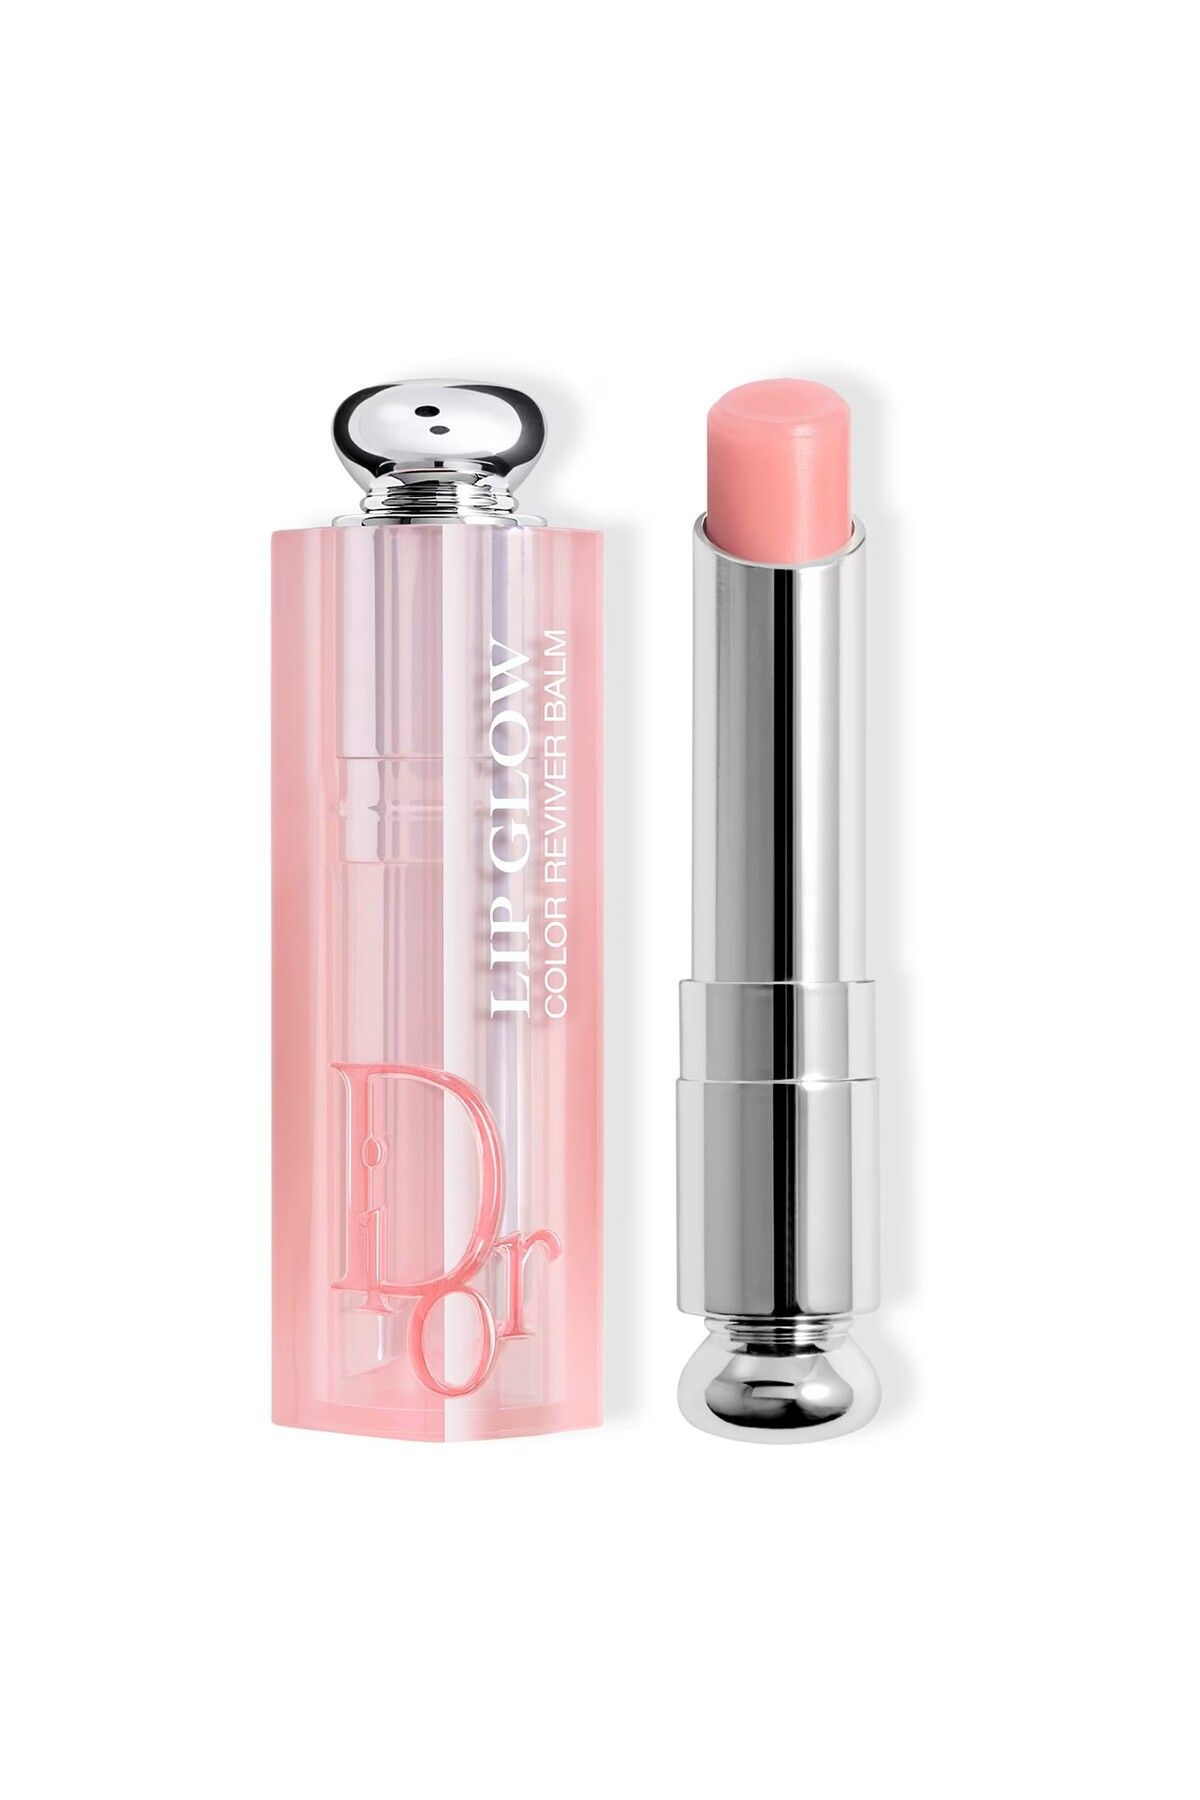 Dior Addict Lip Glow-Kiraz Yağı İçerikli 24 Saat Boyunca Nemlendirici Işıltılı Lip Glow